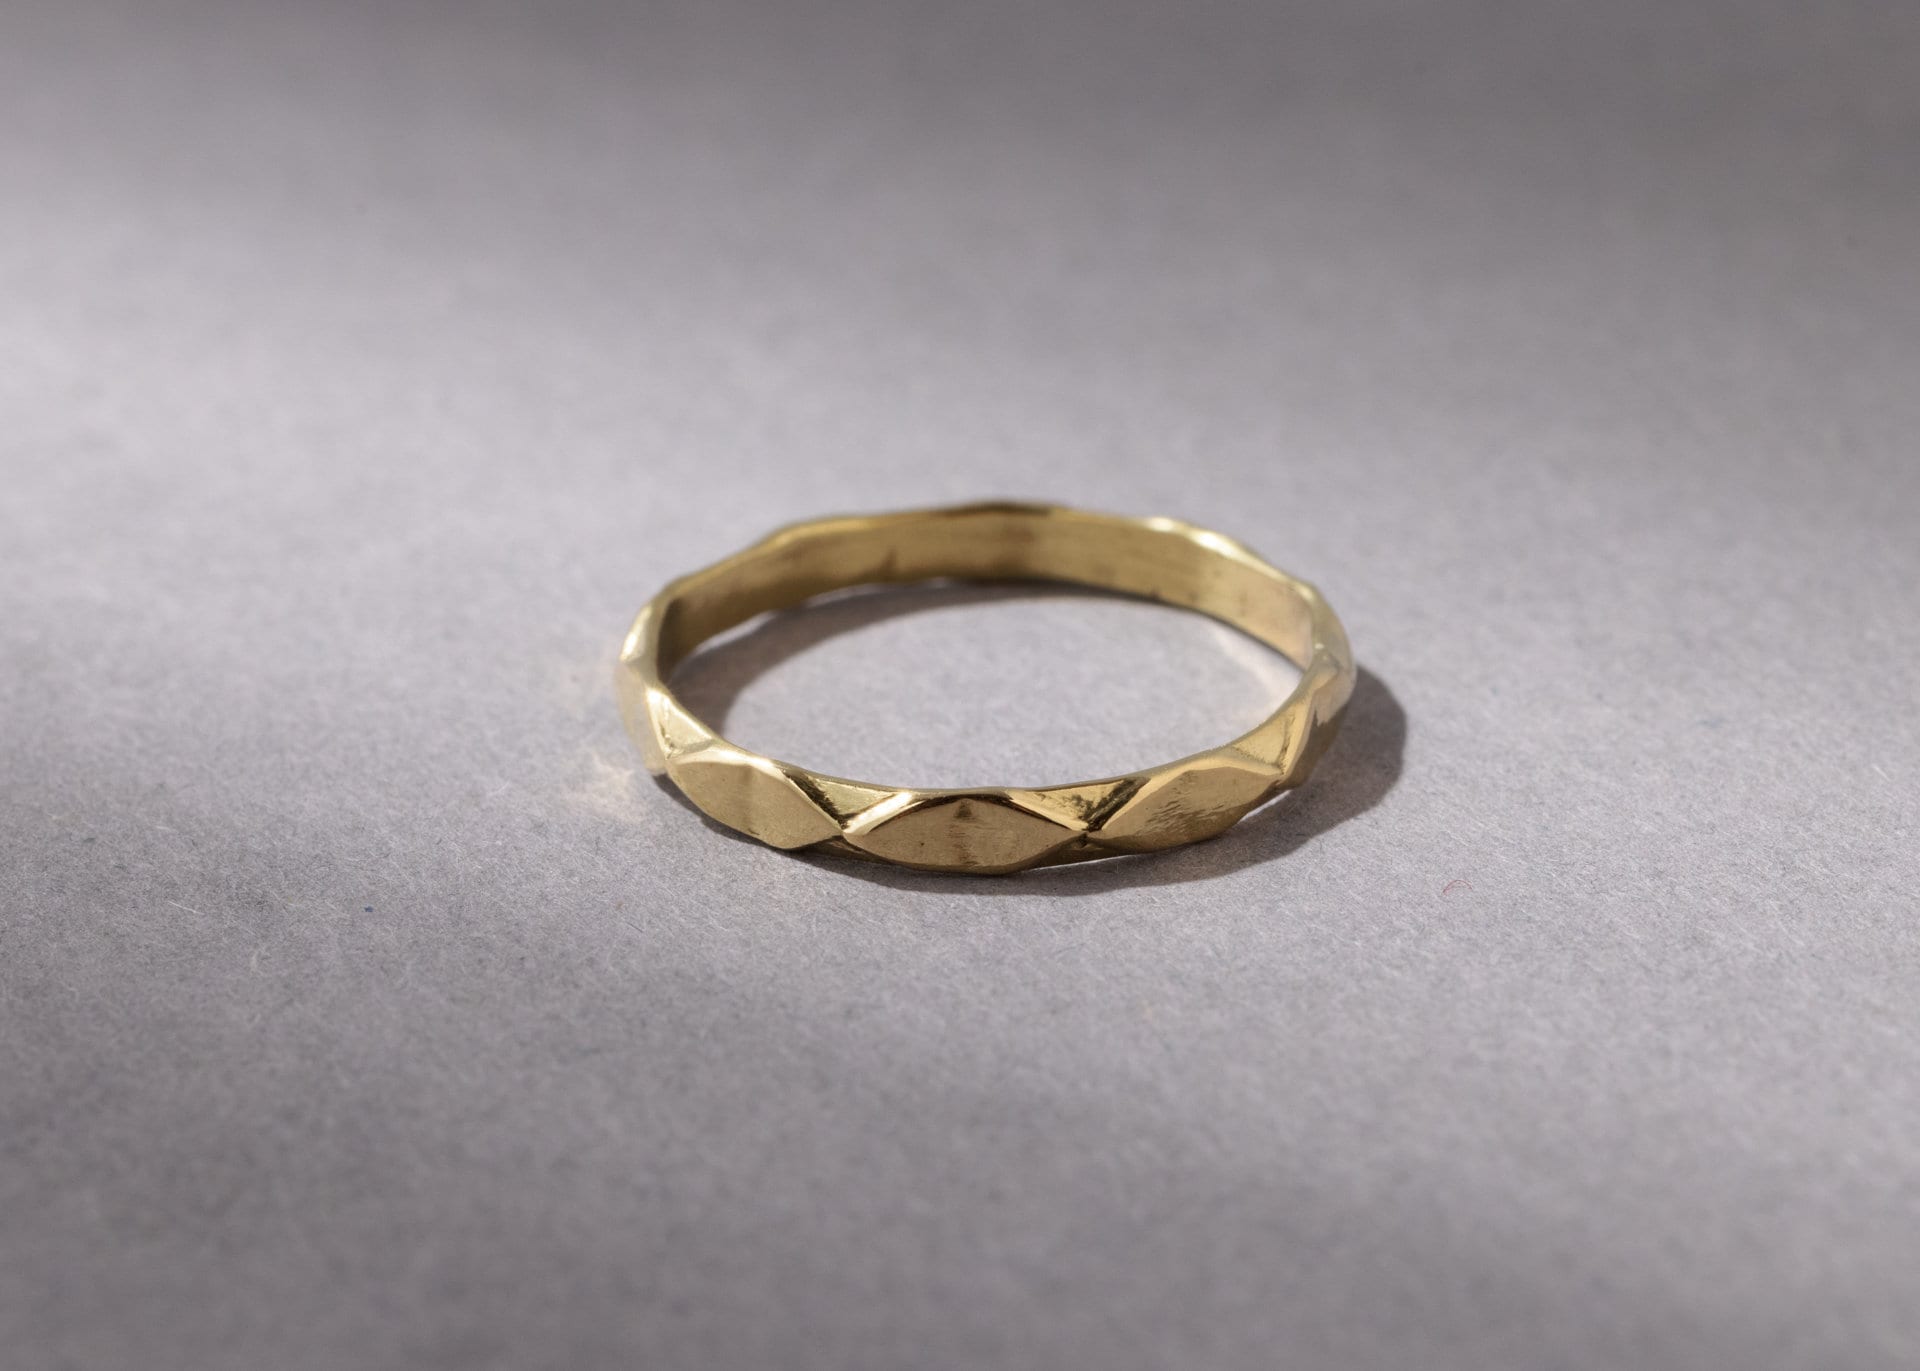 Zierlicher simpler Ring gold handgemacht